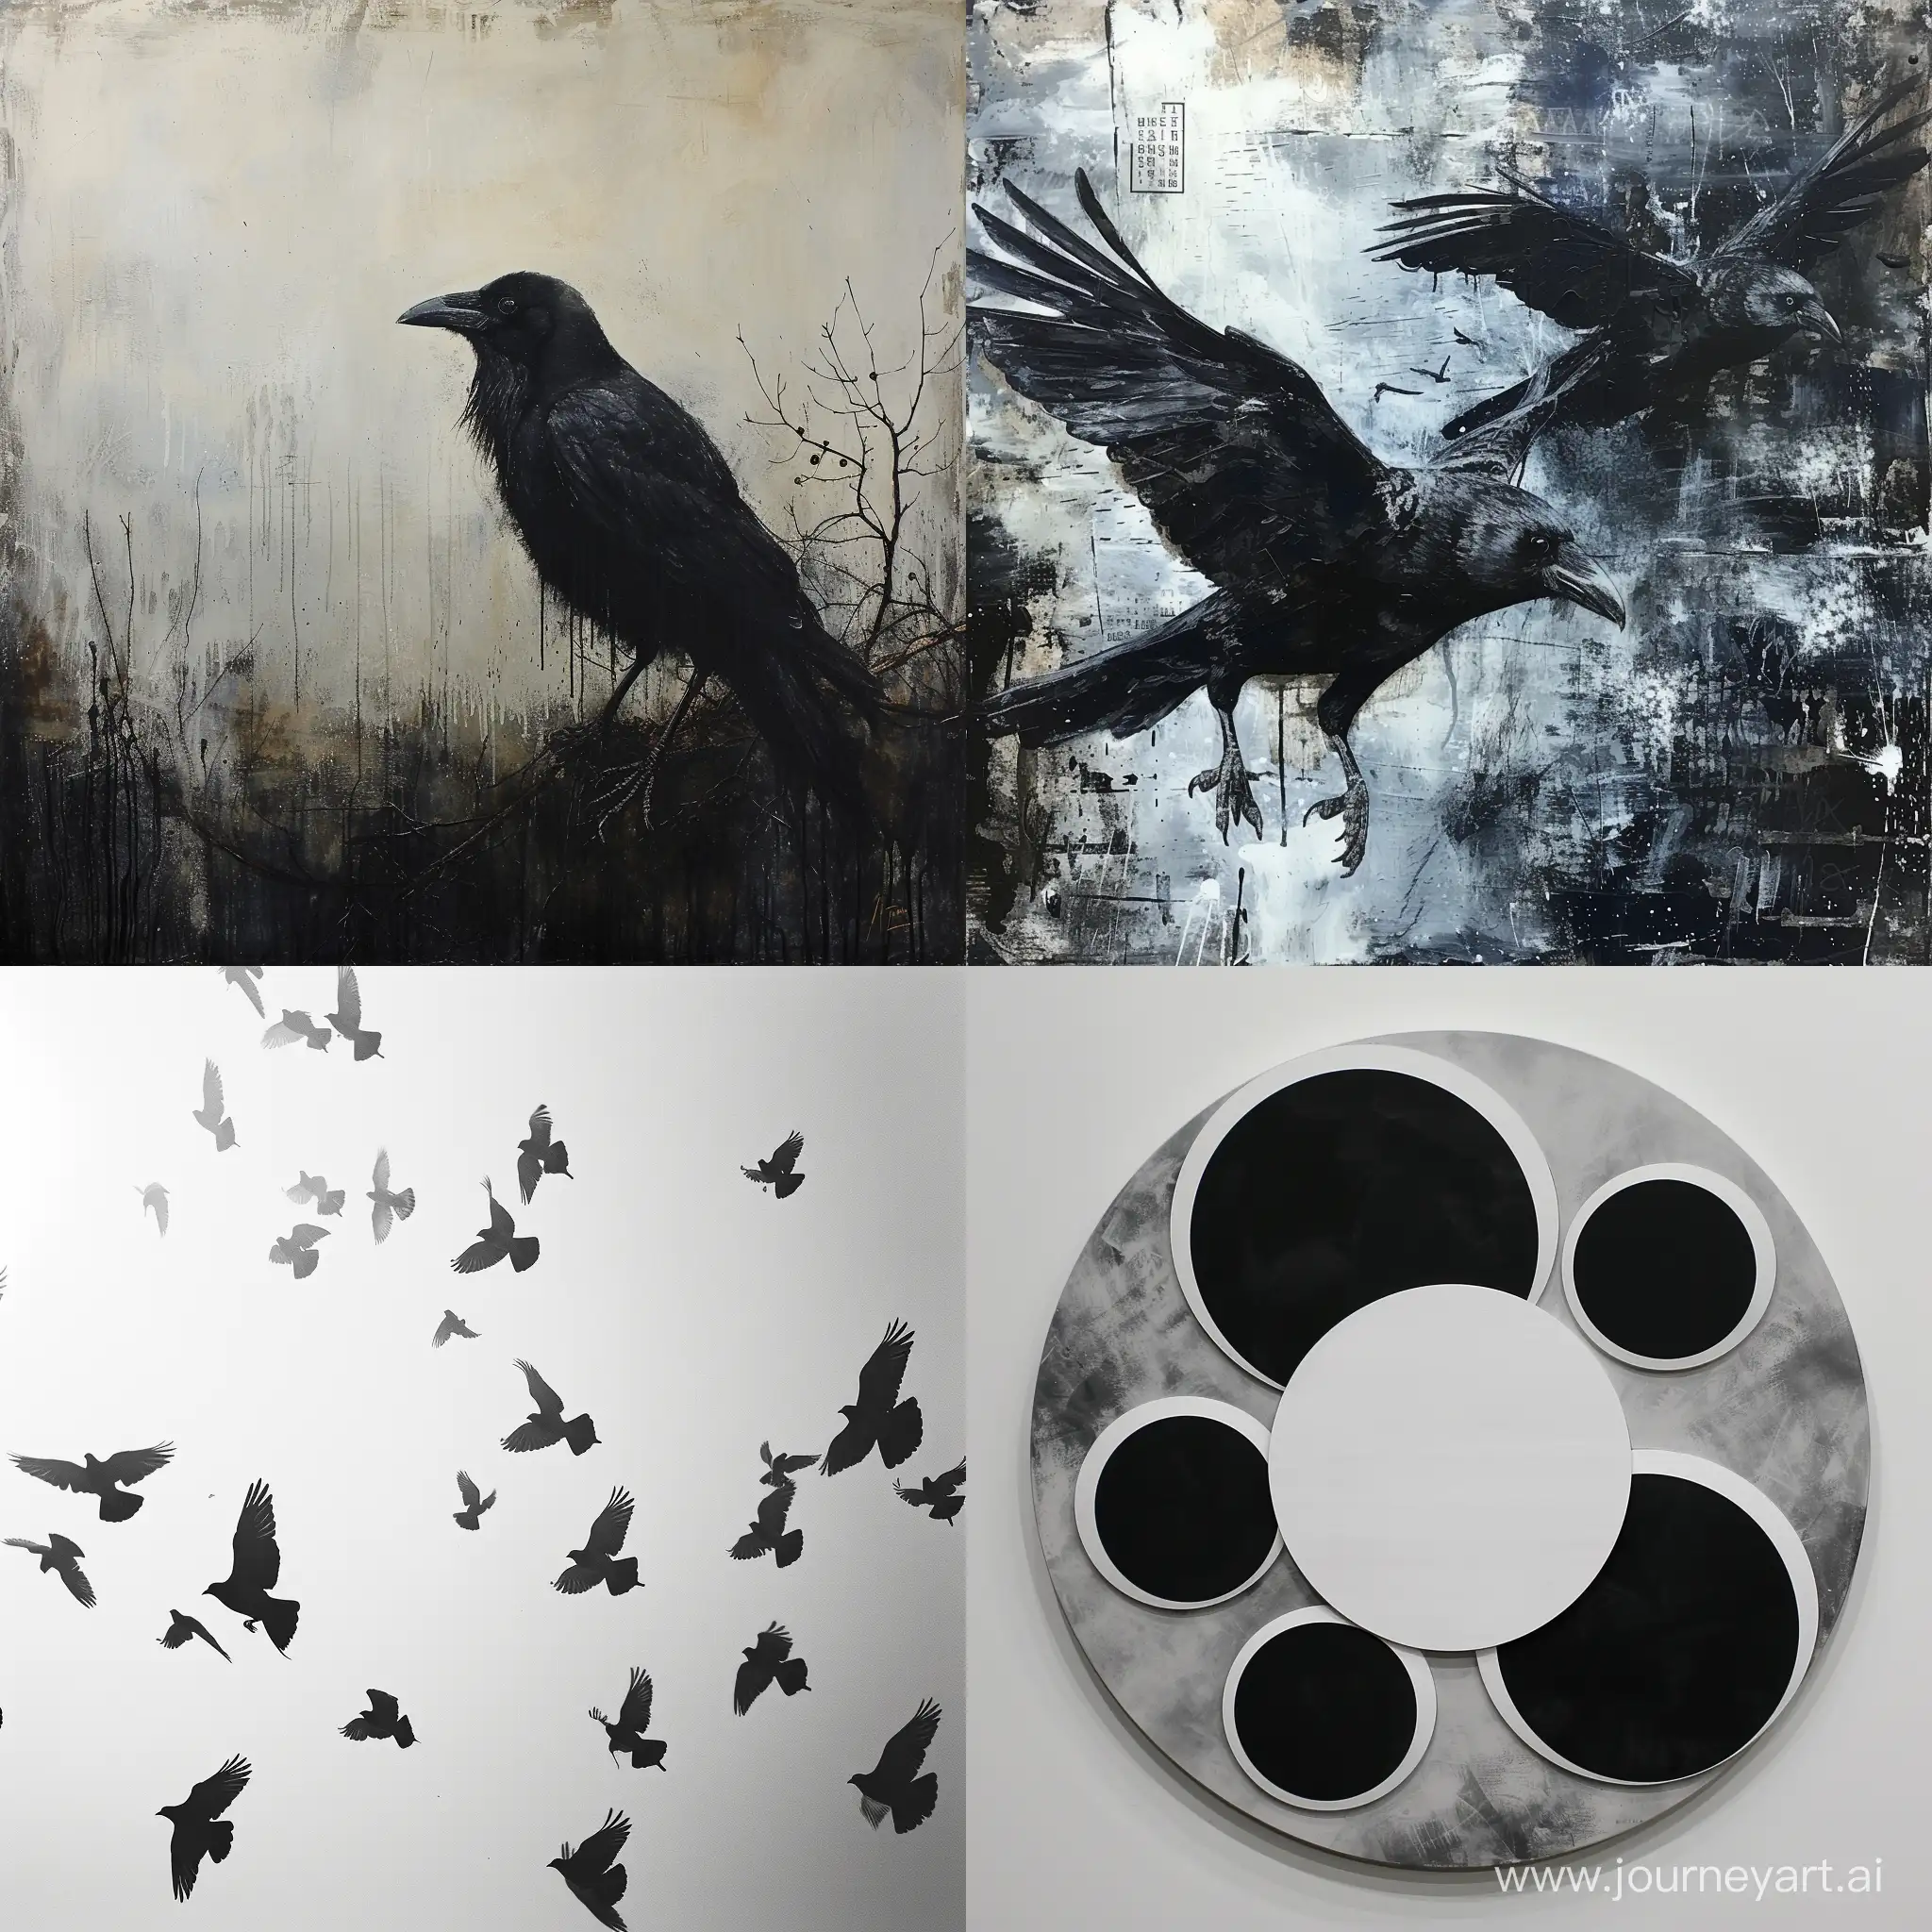 Логотип::1.1, белая::1.5 ворона среди множества черных птиц